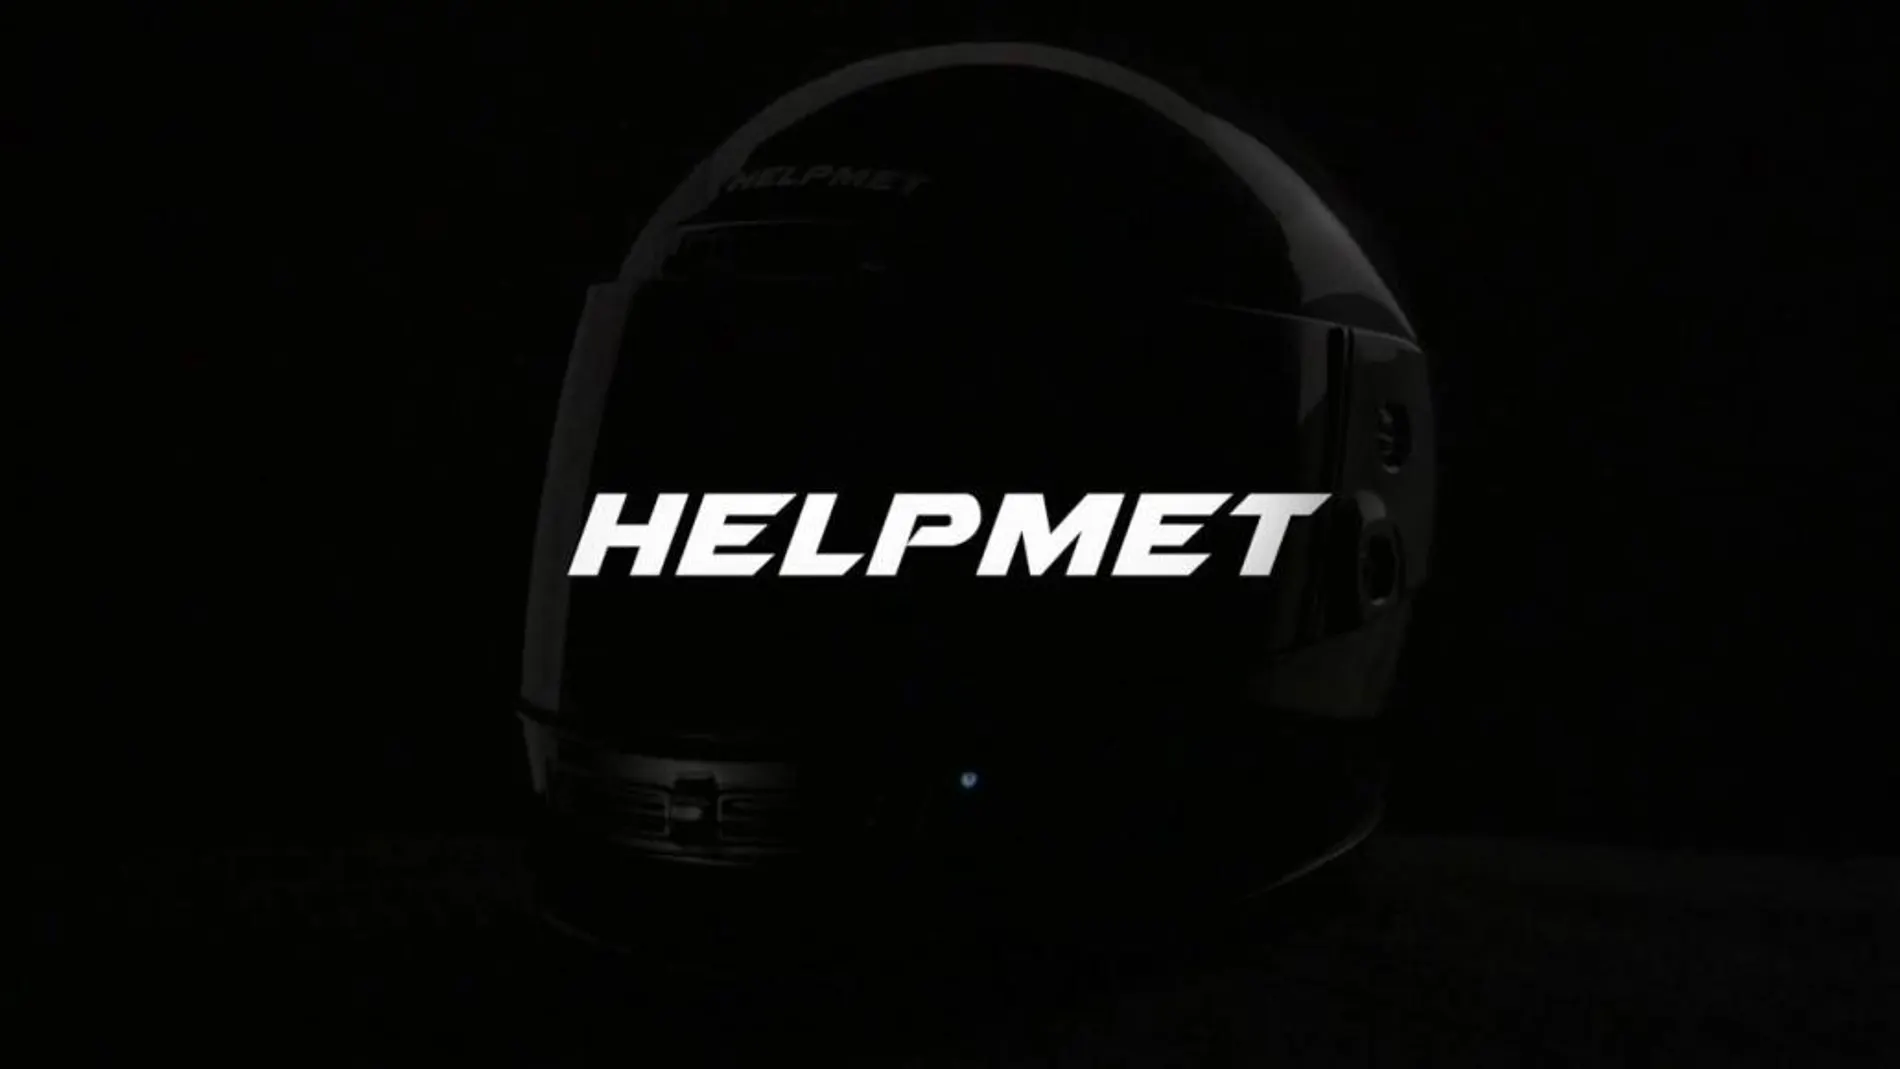 El casco Helpmet